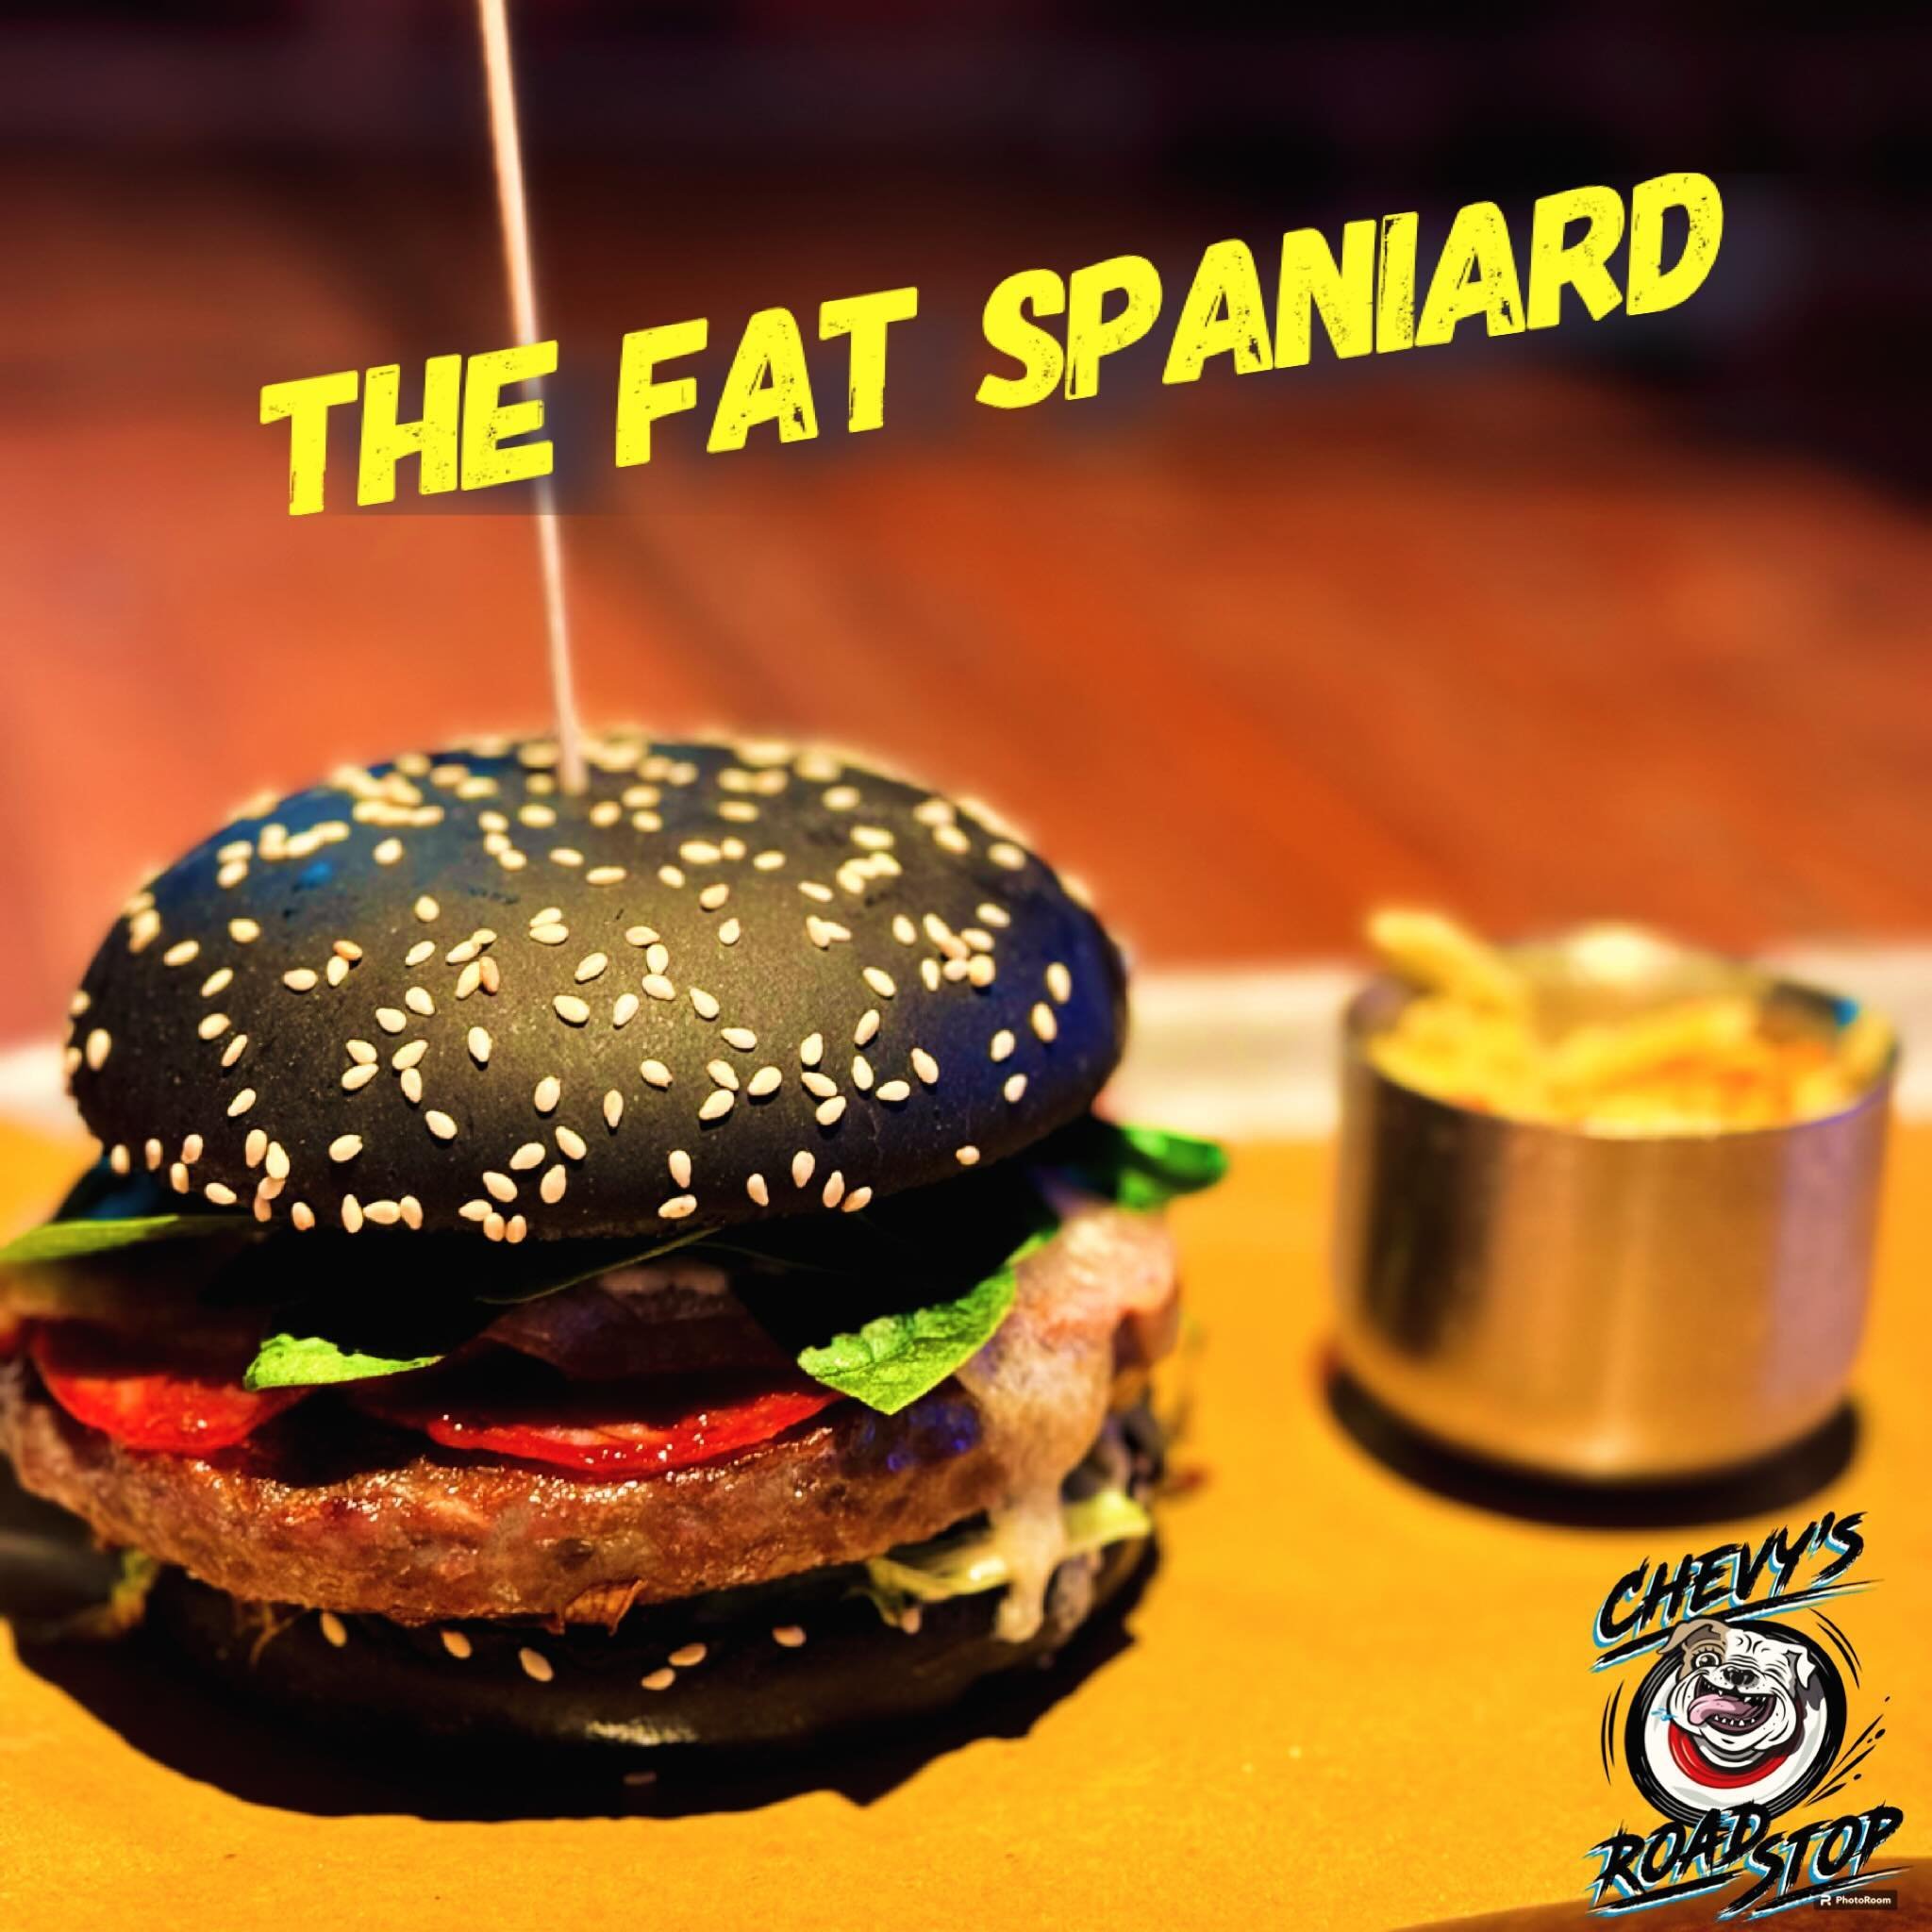 Neuer Burger of the month🔥 Ab Mittwochabend, 1.5.24:
.
THE FAT SPANIARD
.
mit CH-Beef Pattie, Chorizo, Manchego, frischem Blattspinat und Chevytomaten😜, mit Aioli Sauce!
.
🍔come and taste it!